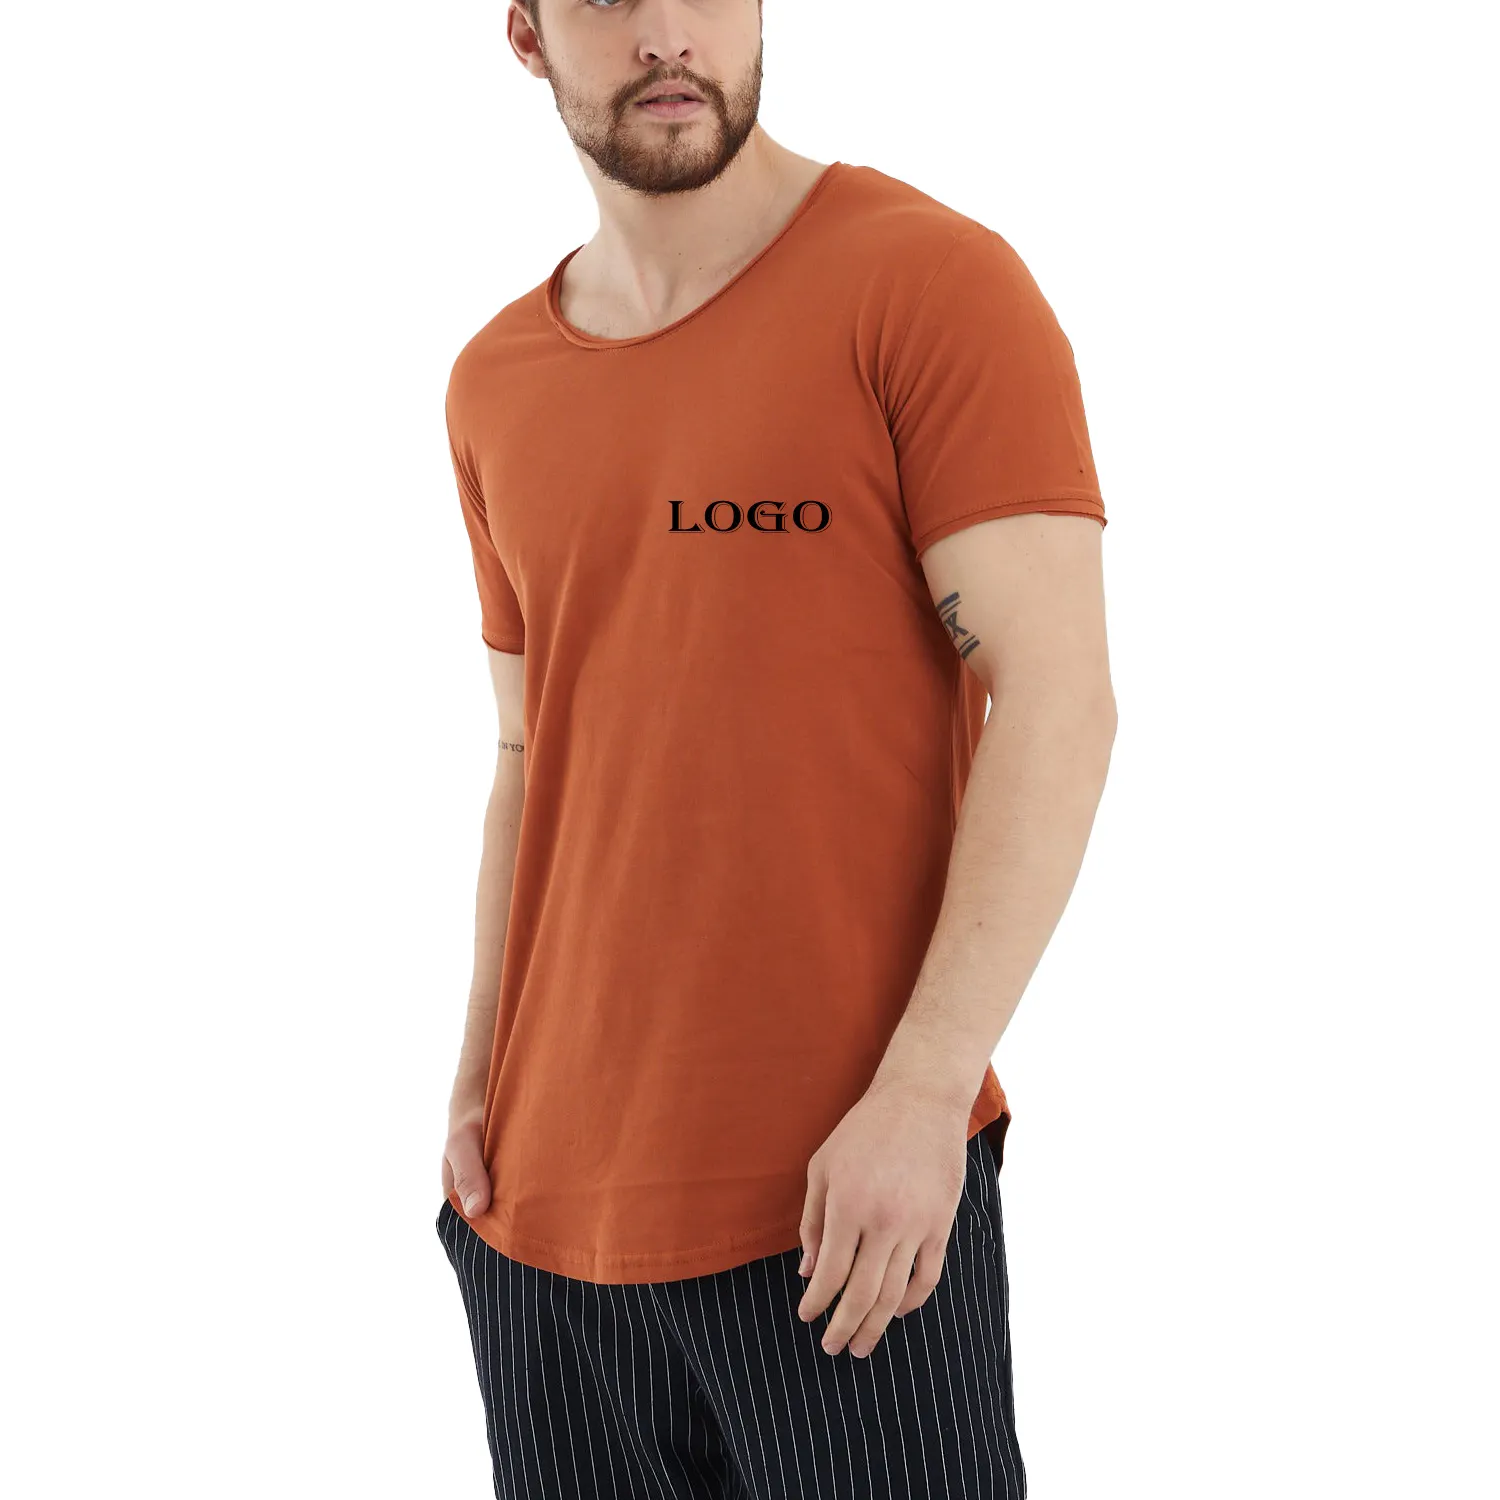 Özelleştirmek erkek giyim 100% pamuk markalı tişörtleri ucuz fiyat toplu sipariş örnekleri destek sıcak satış